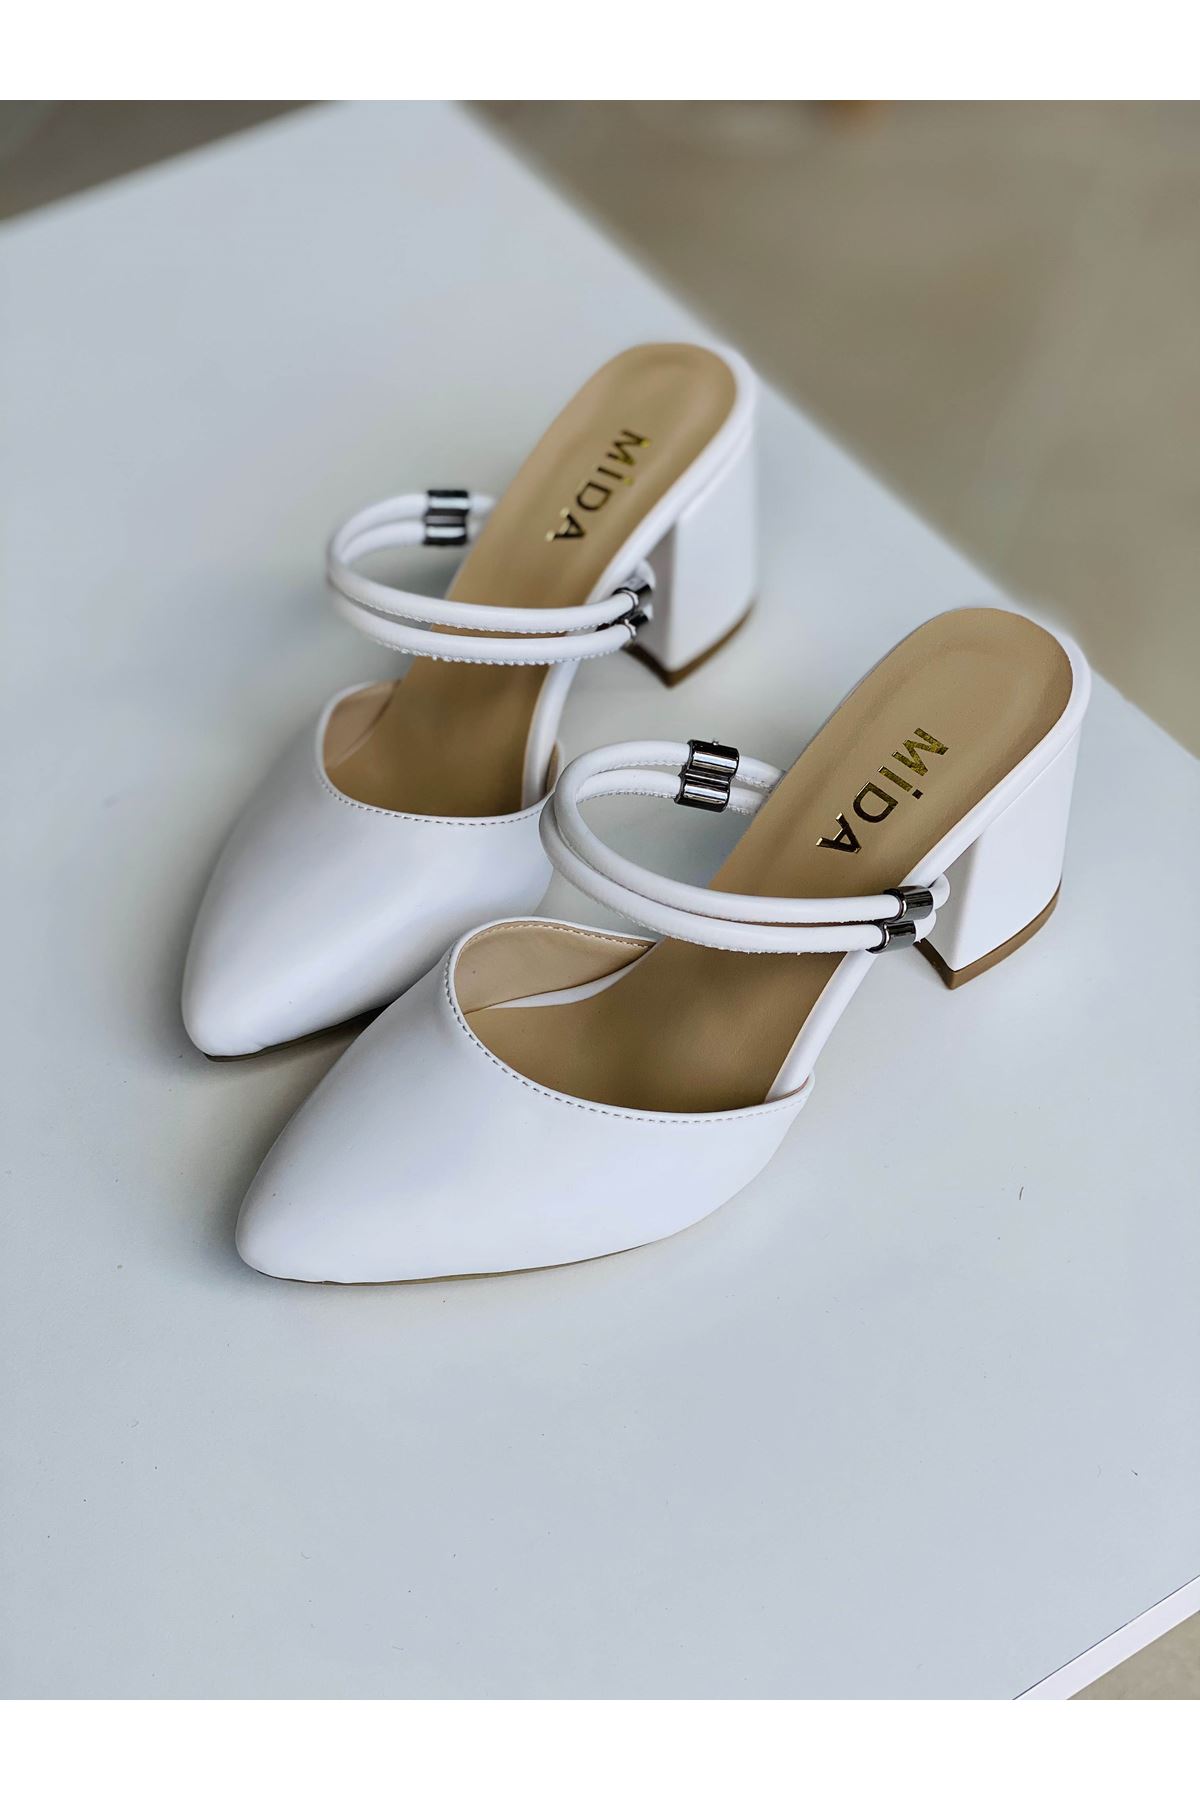 Mida Shoes Y119 Beyaz Deri Topuklu Ayakkabı